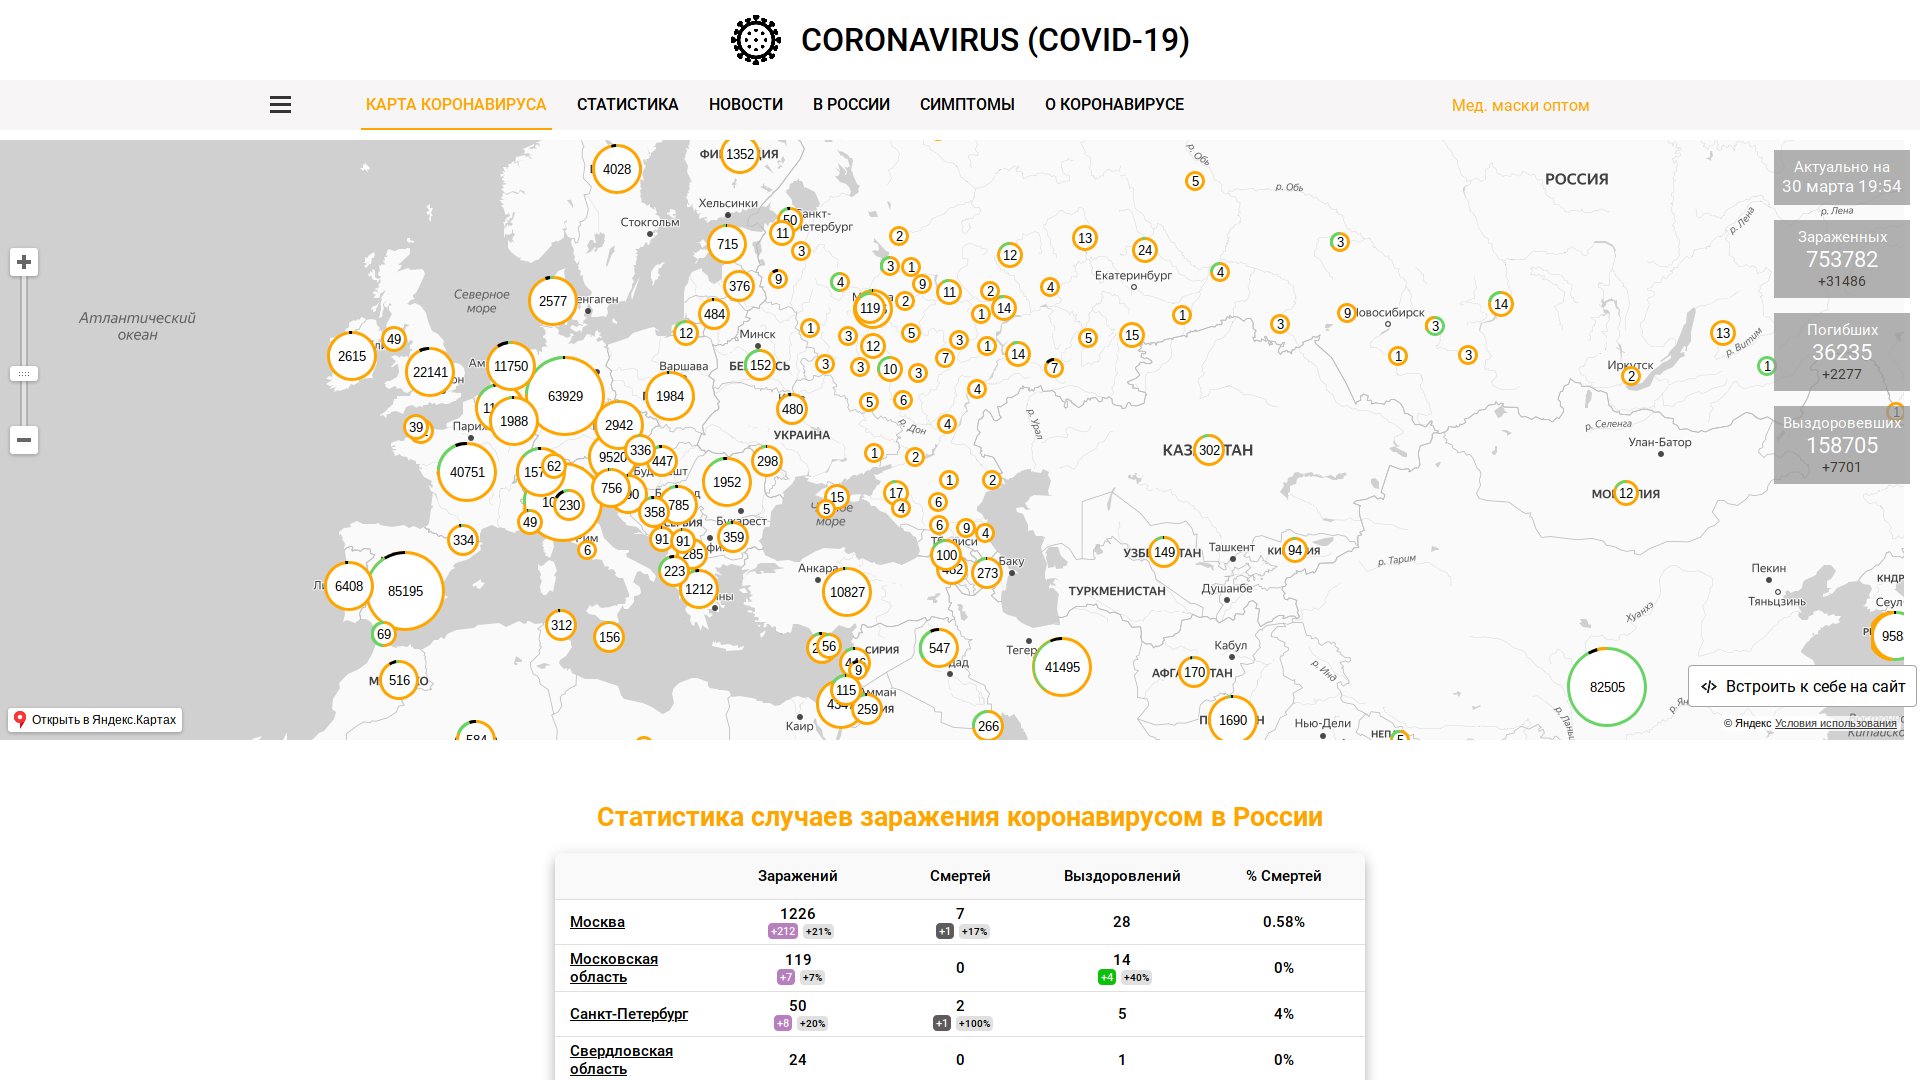 Карты распространения коронавируса SARS-CoV-2